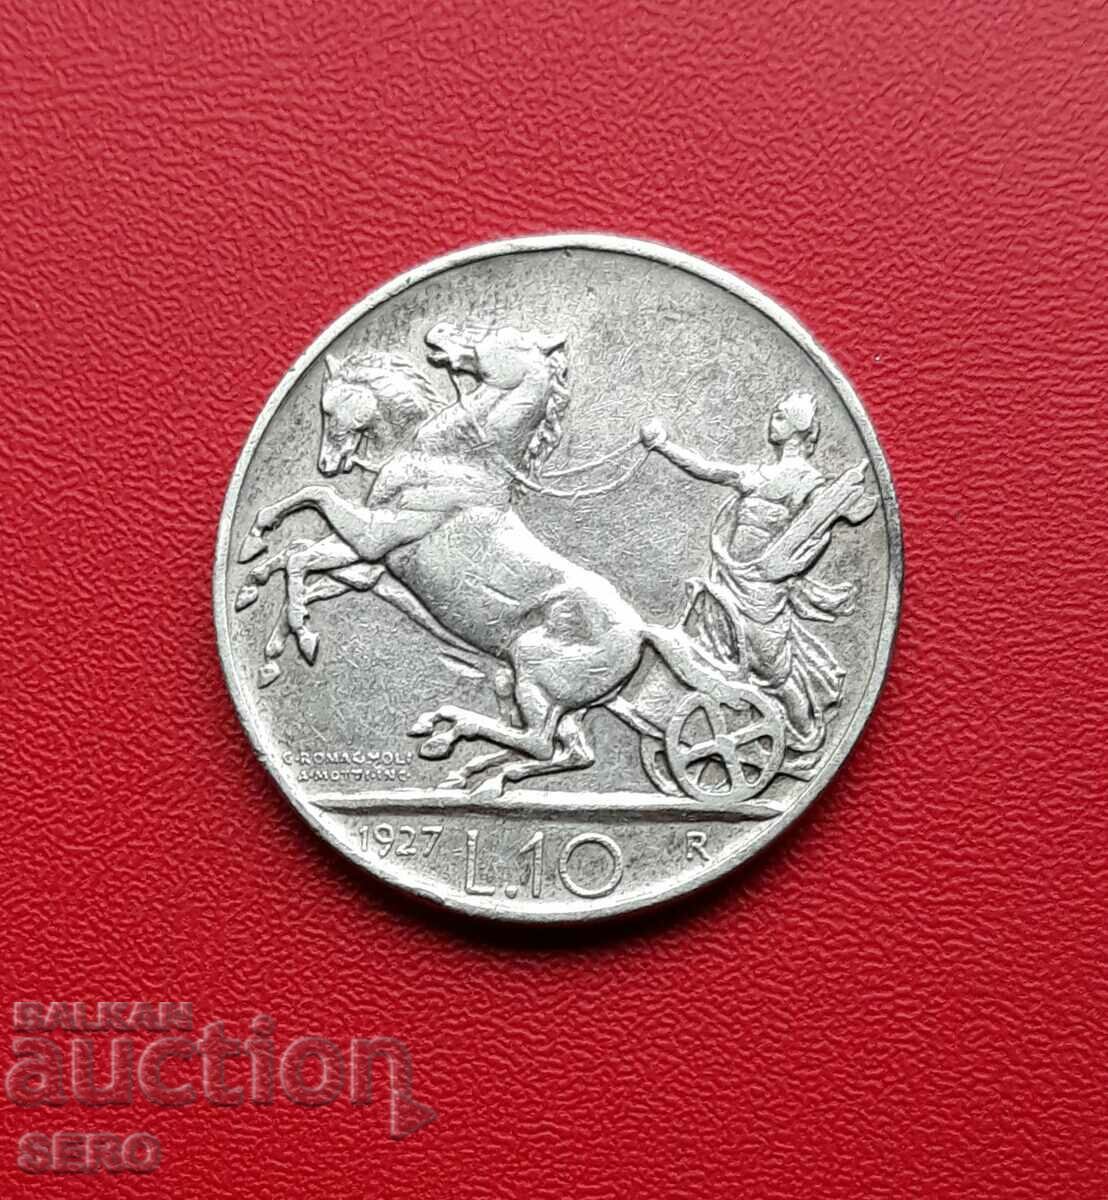 Italy-10 lira 1927-silver